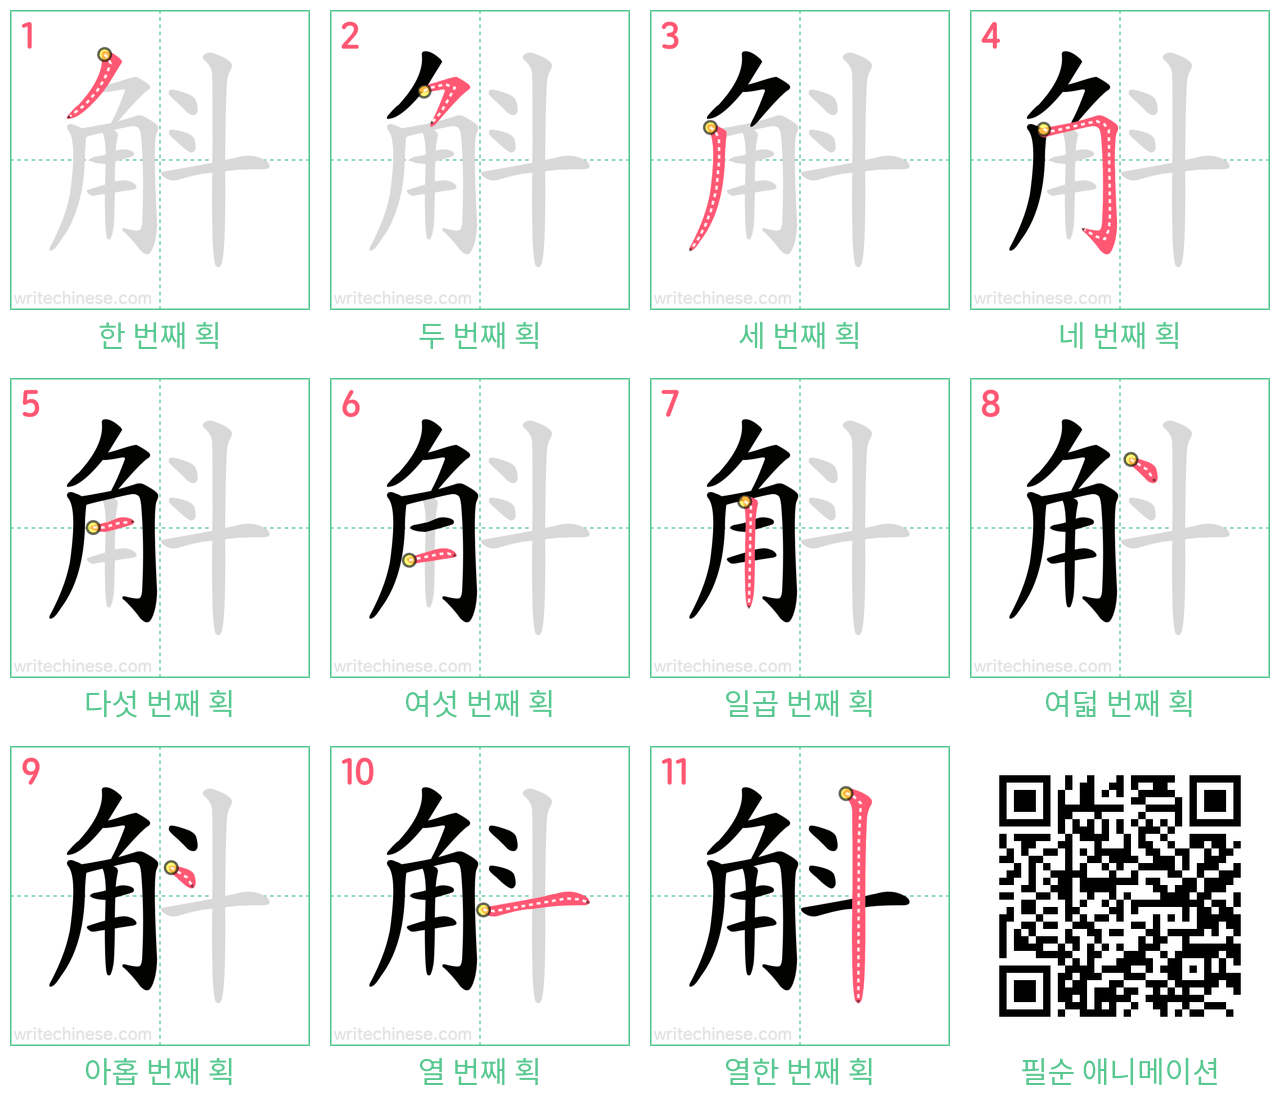 斛 step-by-step stroke order diagrams